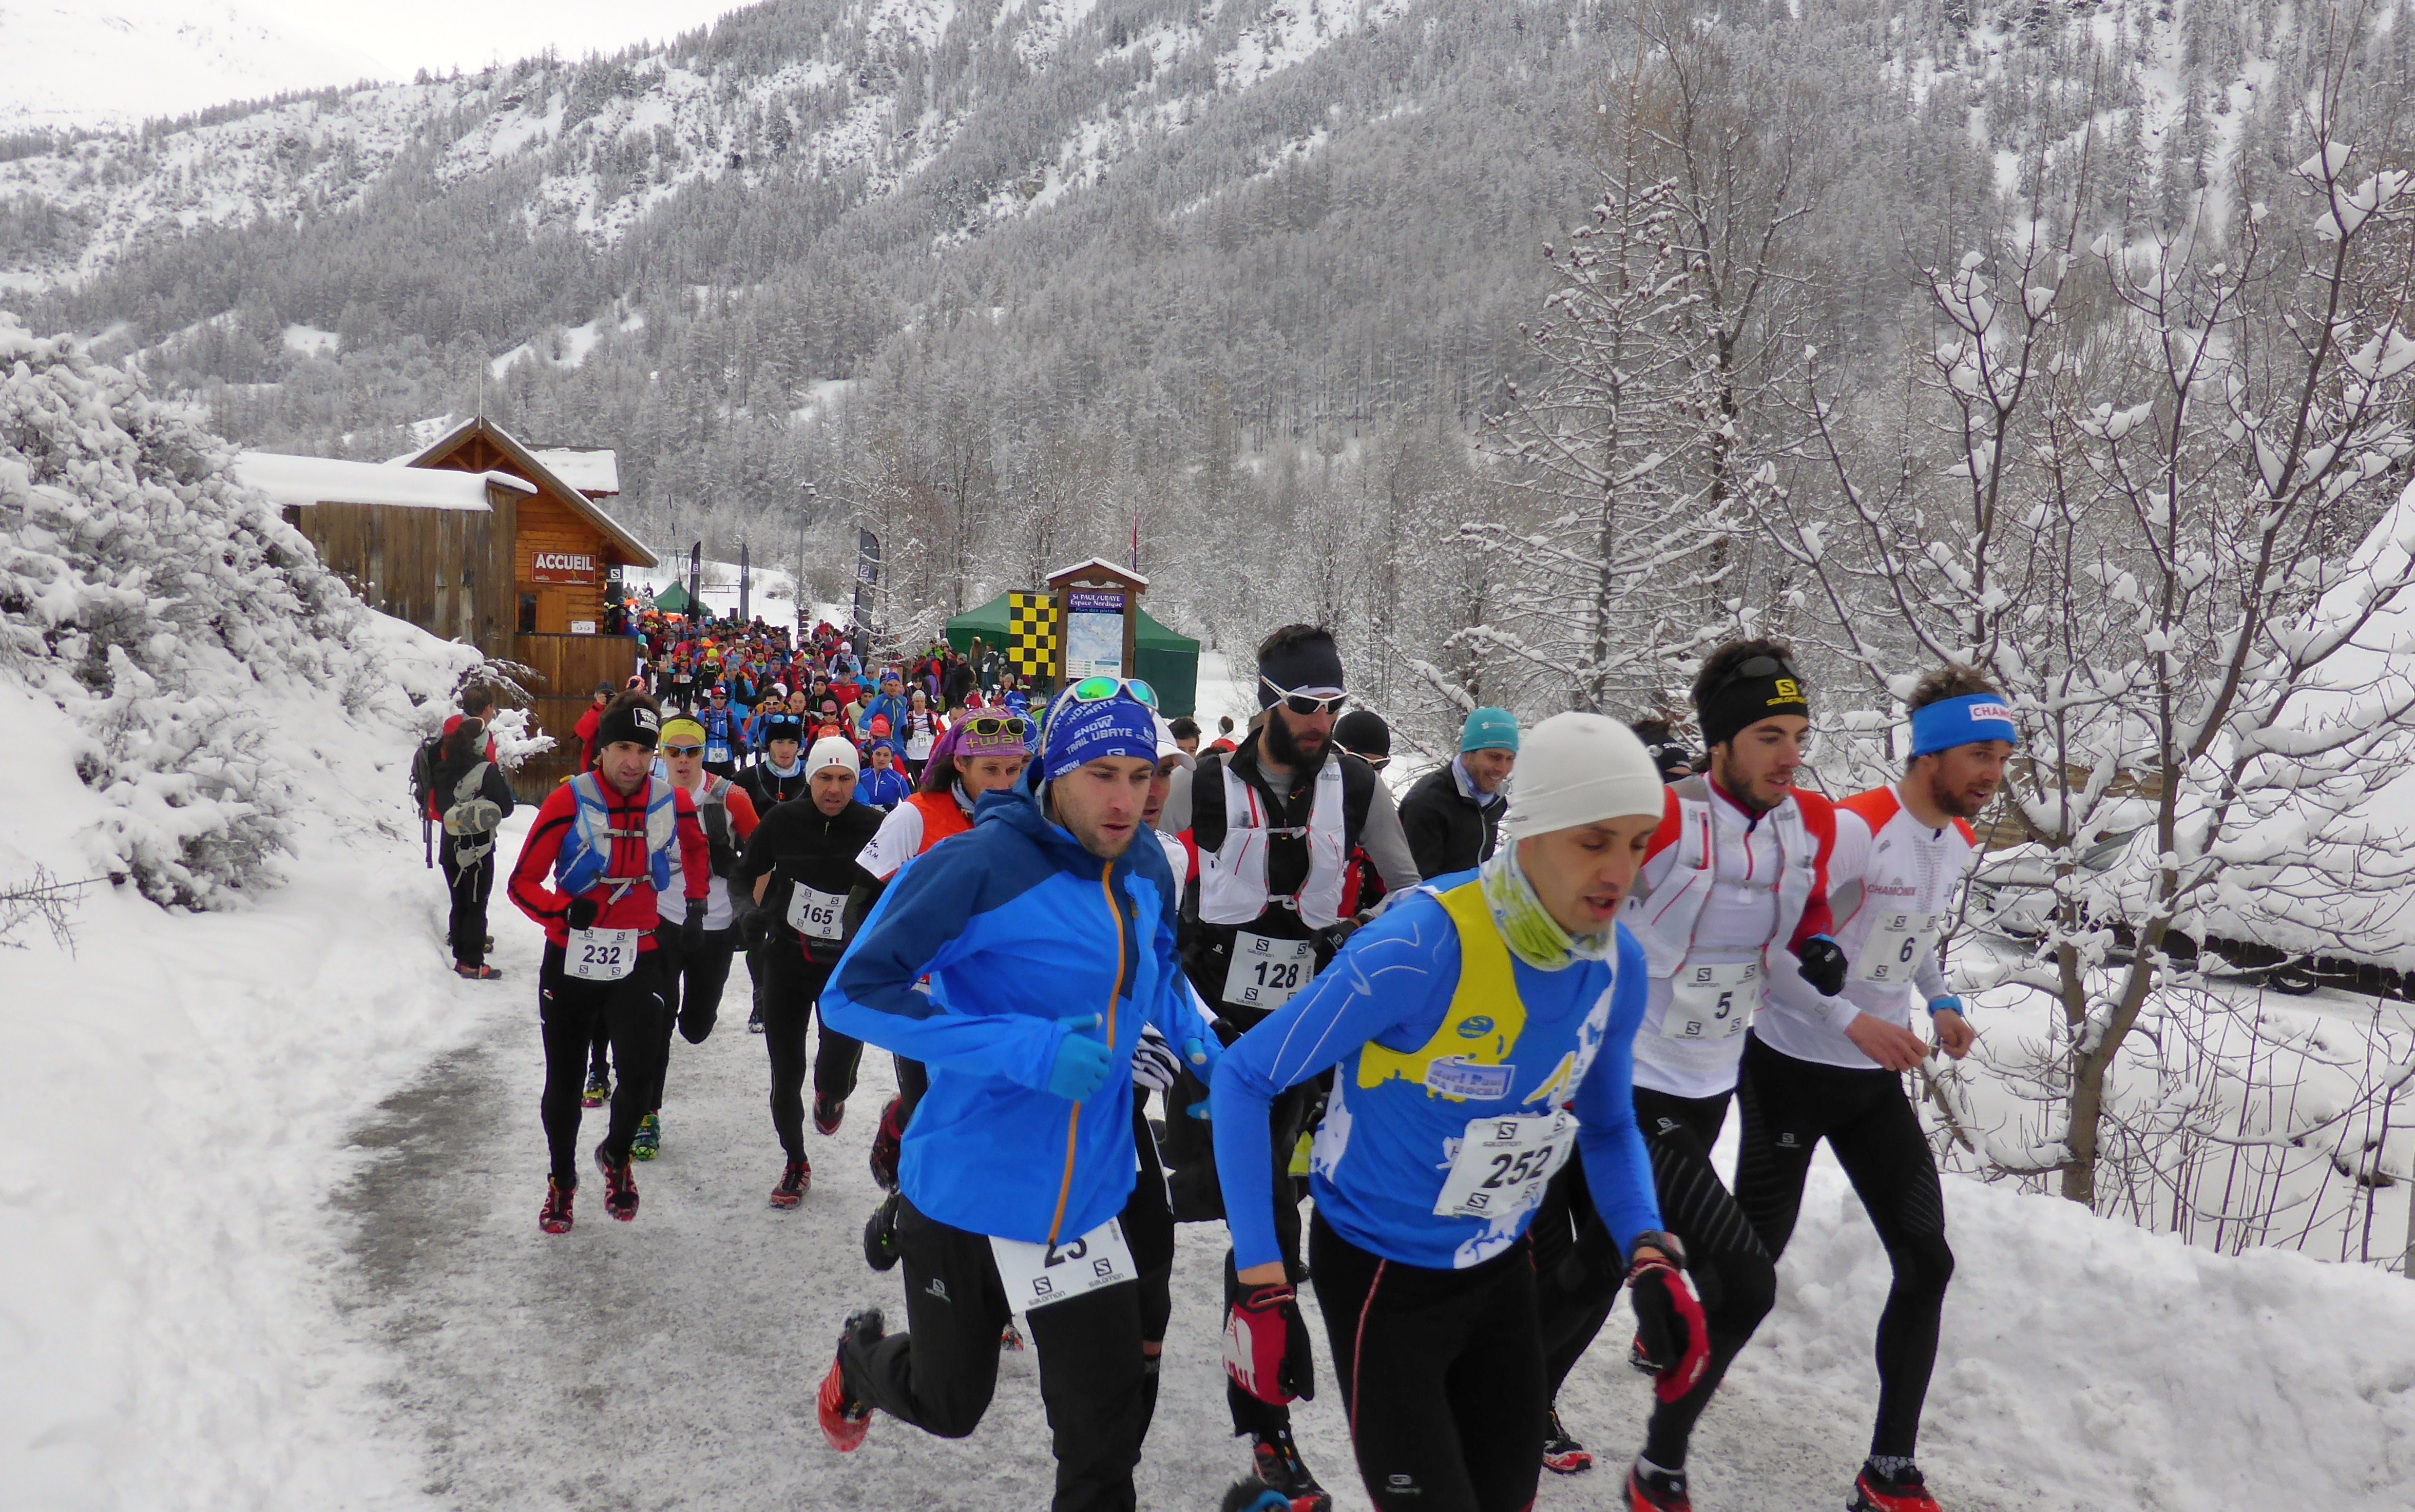 17 février : Présentation – Ubaye Snow Trail Salomon encore à « guichet fermé » !!!